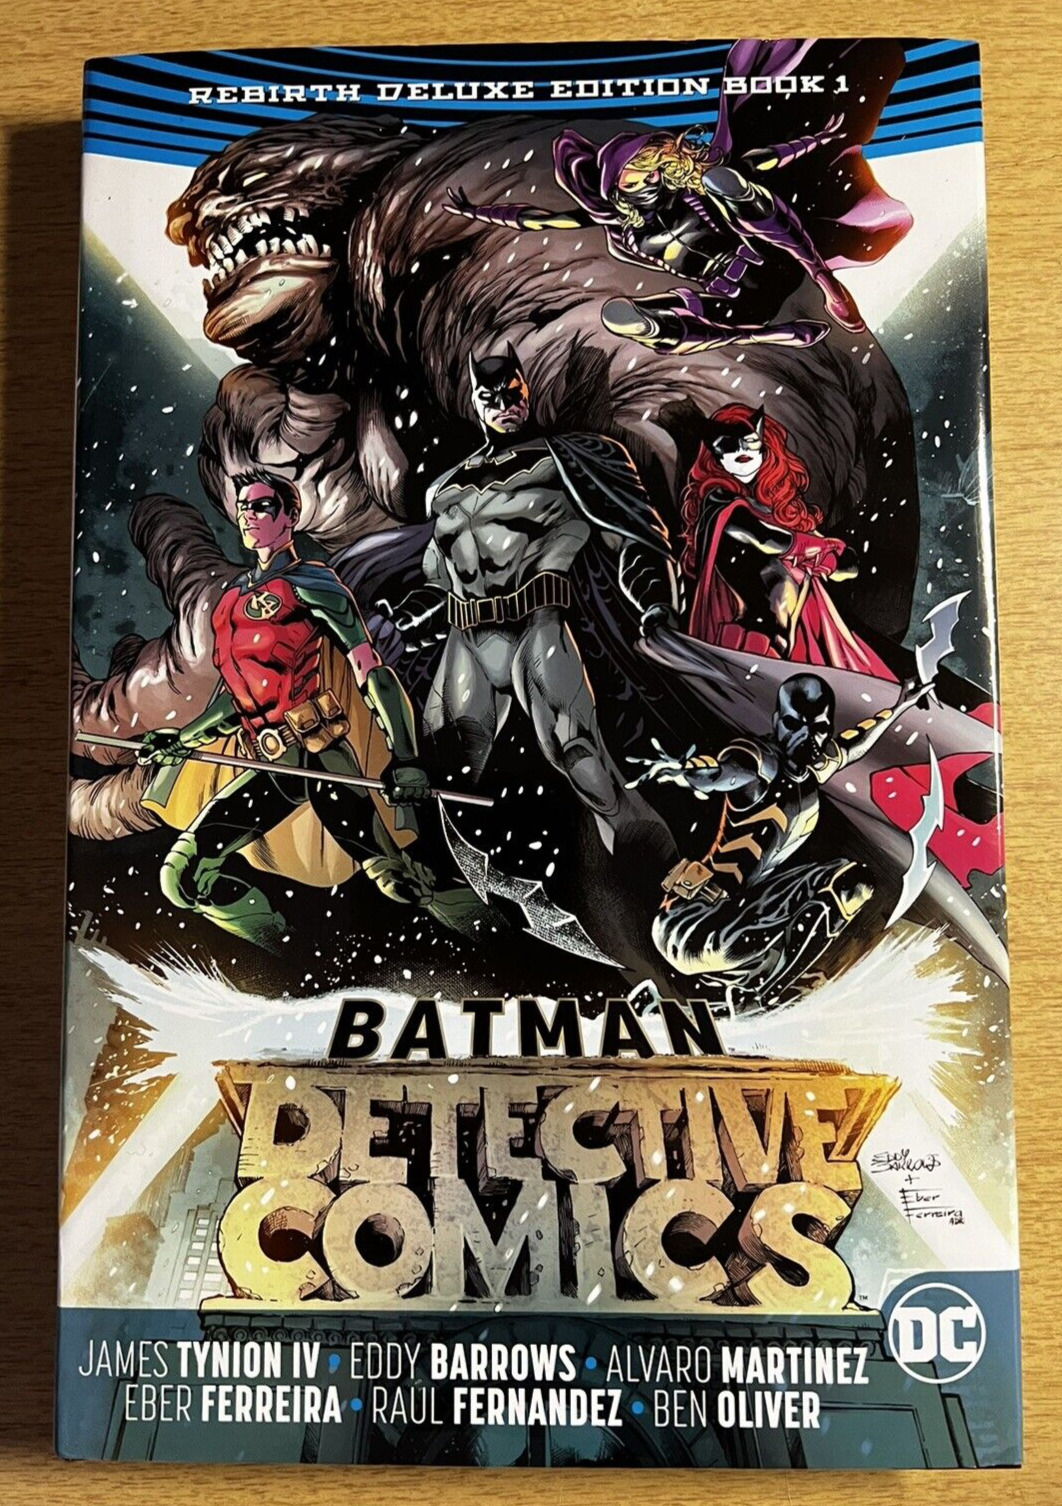 DC - BATMAN: Detective Comics - Rebirth Deluxe Edition - Book 1 - Brand New